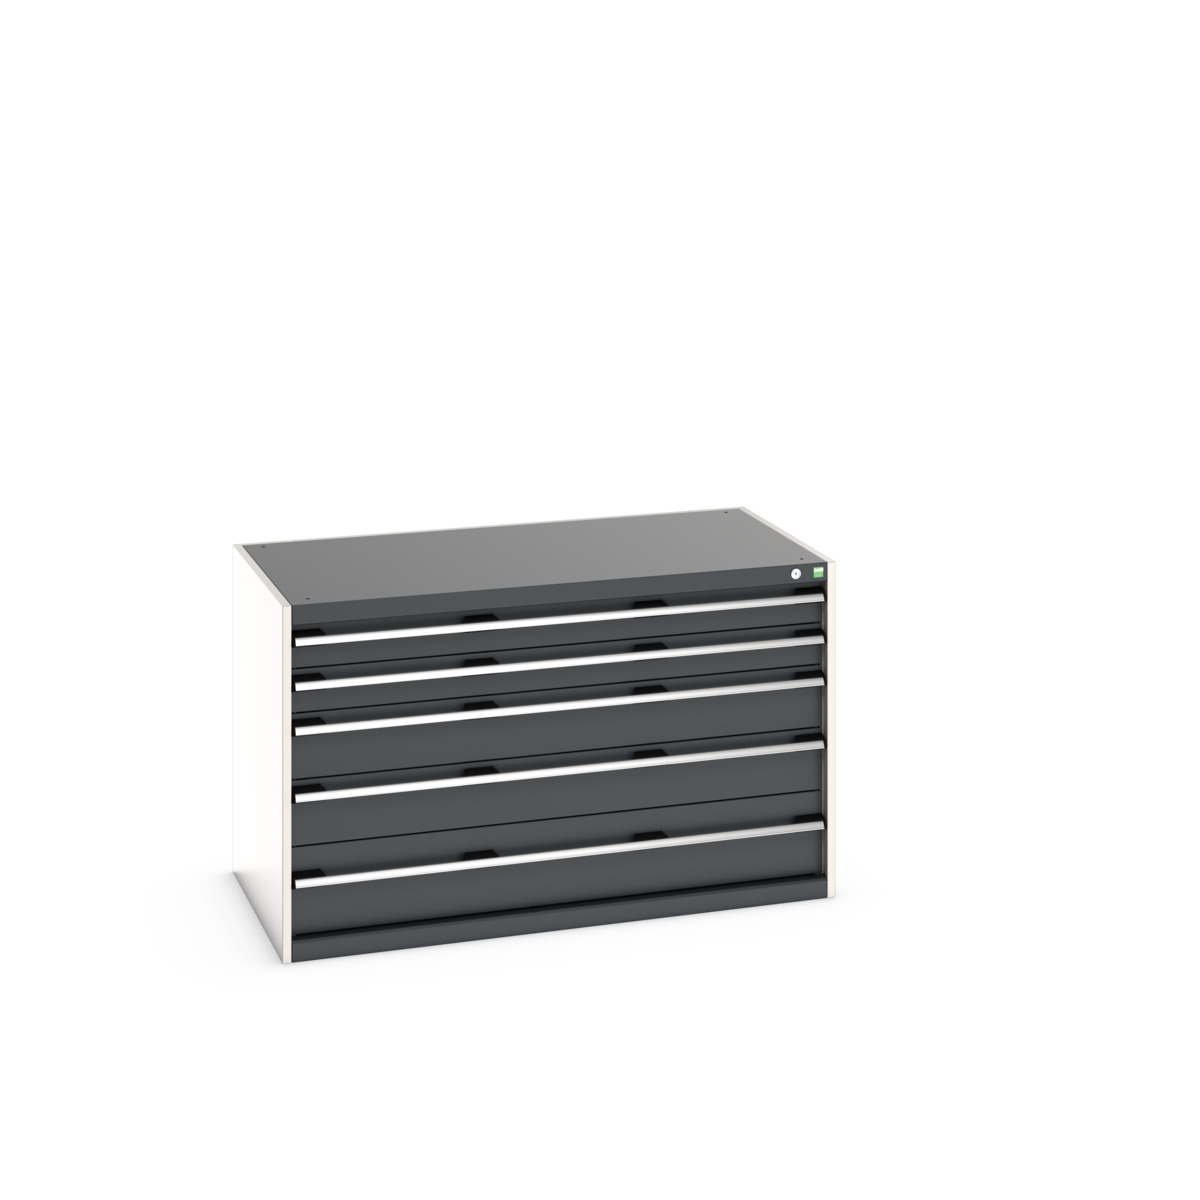 40030007.19V - cubio drawer cabinet